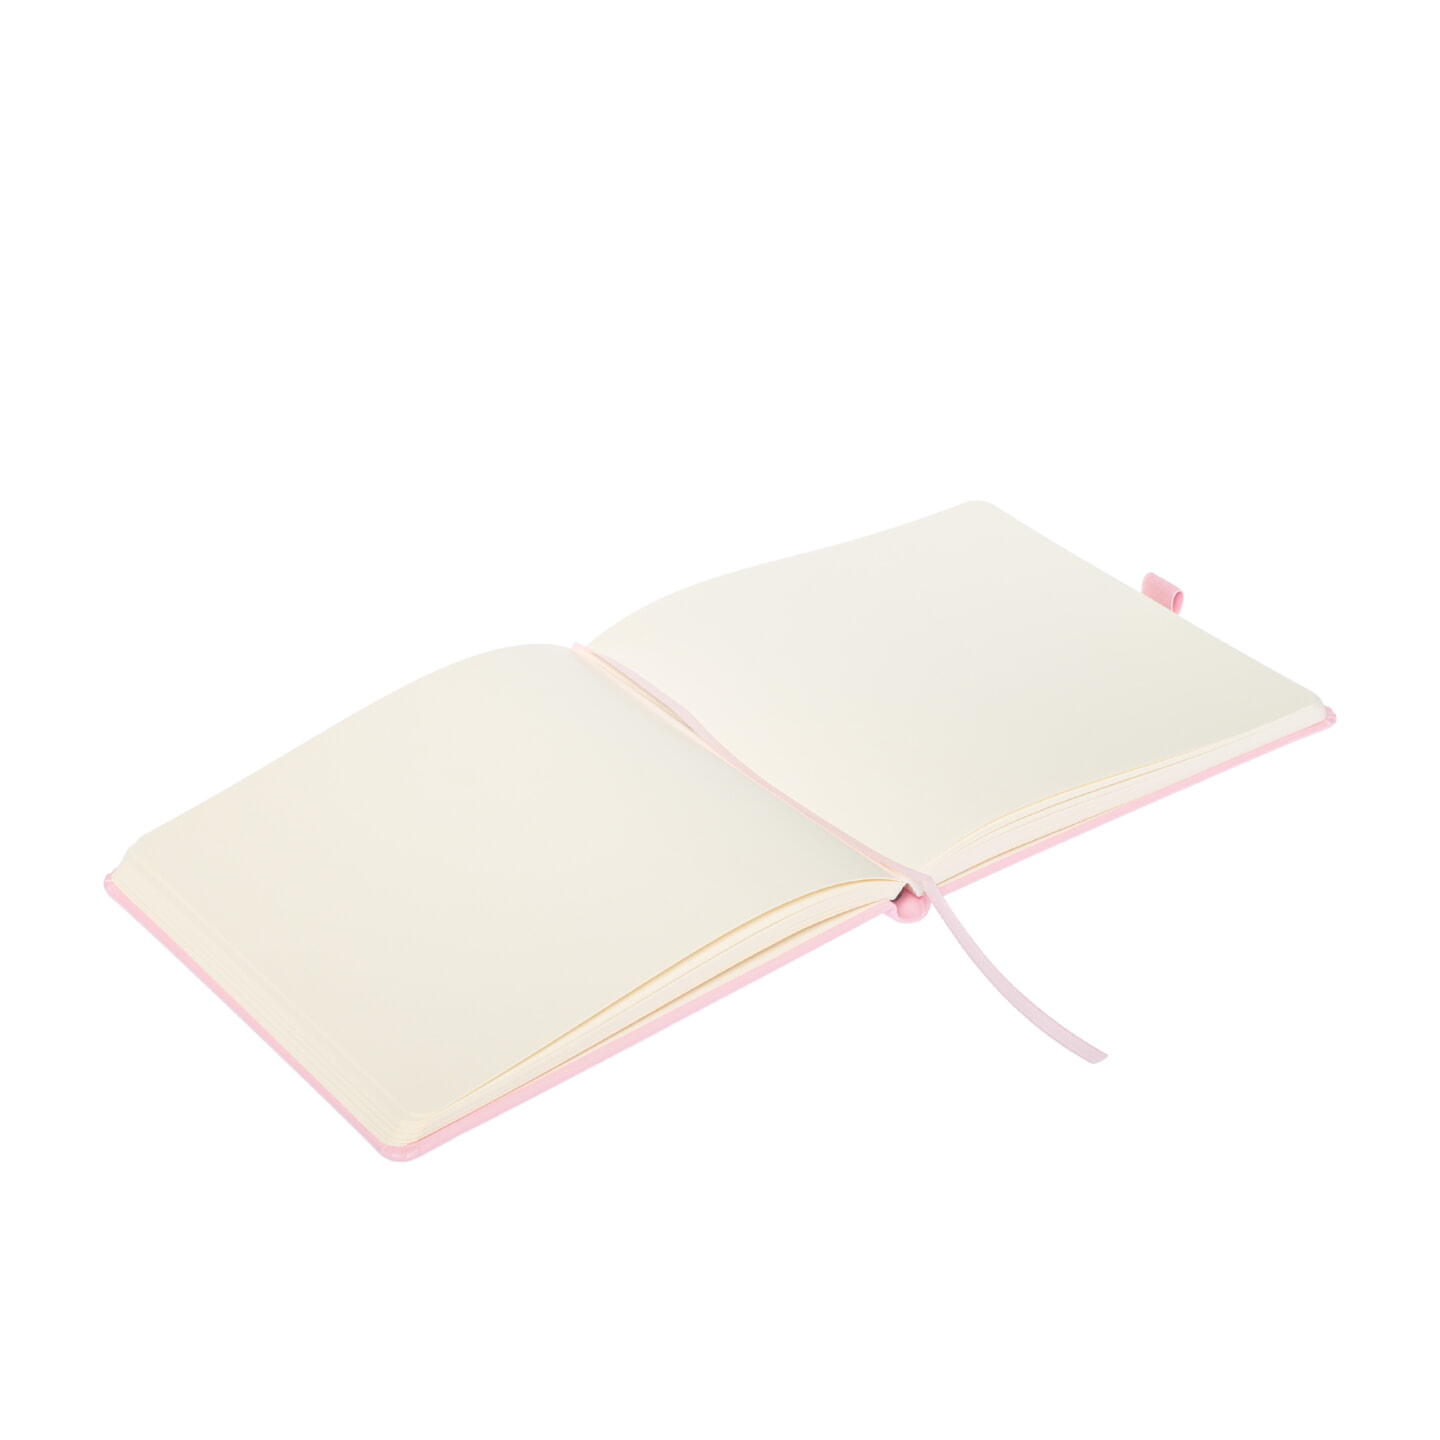 Блокнот для зарисовок Sketchmarker 140г/кв.м 20*20cм 80л твердая обложка Розовый